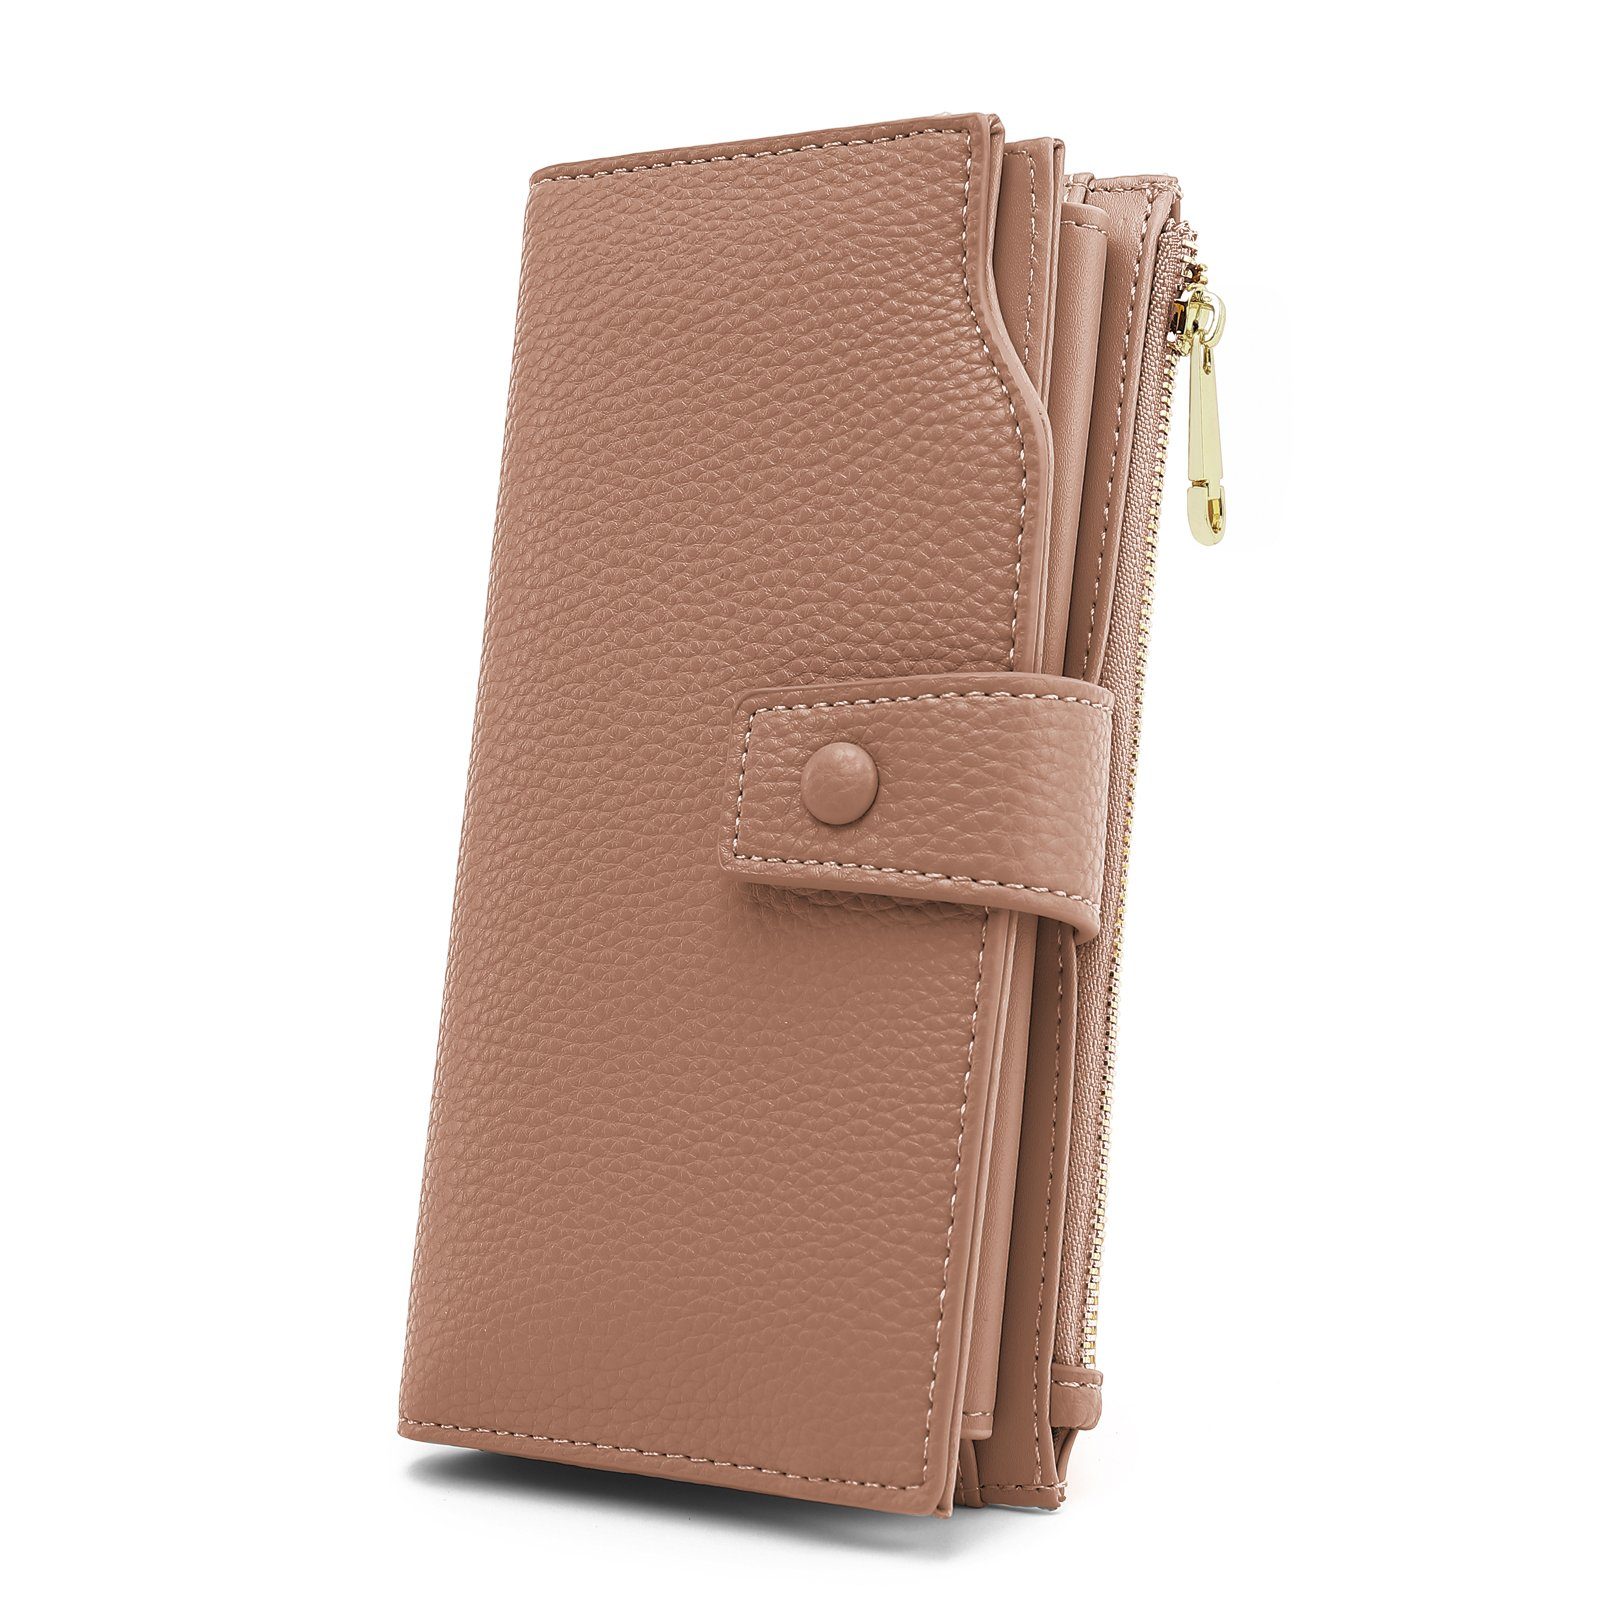 TAN.TOMI Brieftasche Portemonnaie Damen, Geldbörse für Frauen mit Lanyard (Brieftasche), Geldbörse aus hochwertigem Kunstleder Braun